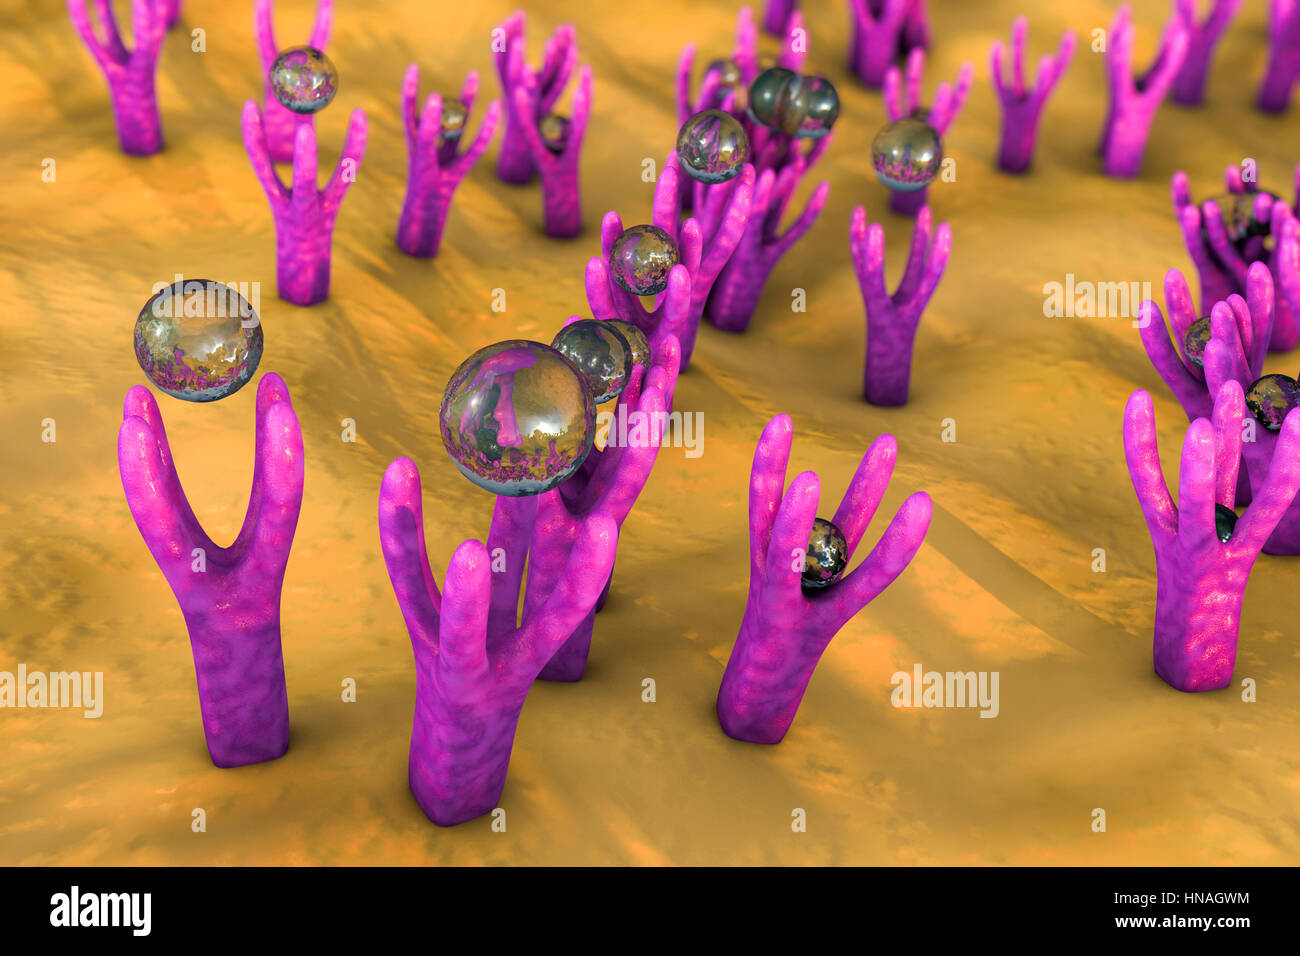 Zellmembran mit Rezeptoren. Computer-Darstellung, die Annäherung der Moleküle an Rezeptoren auf der Oberfläche der Zellmembran... Stockfoto